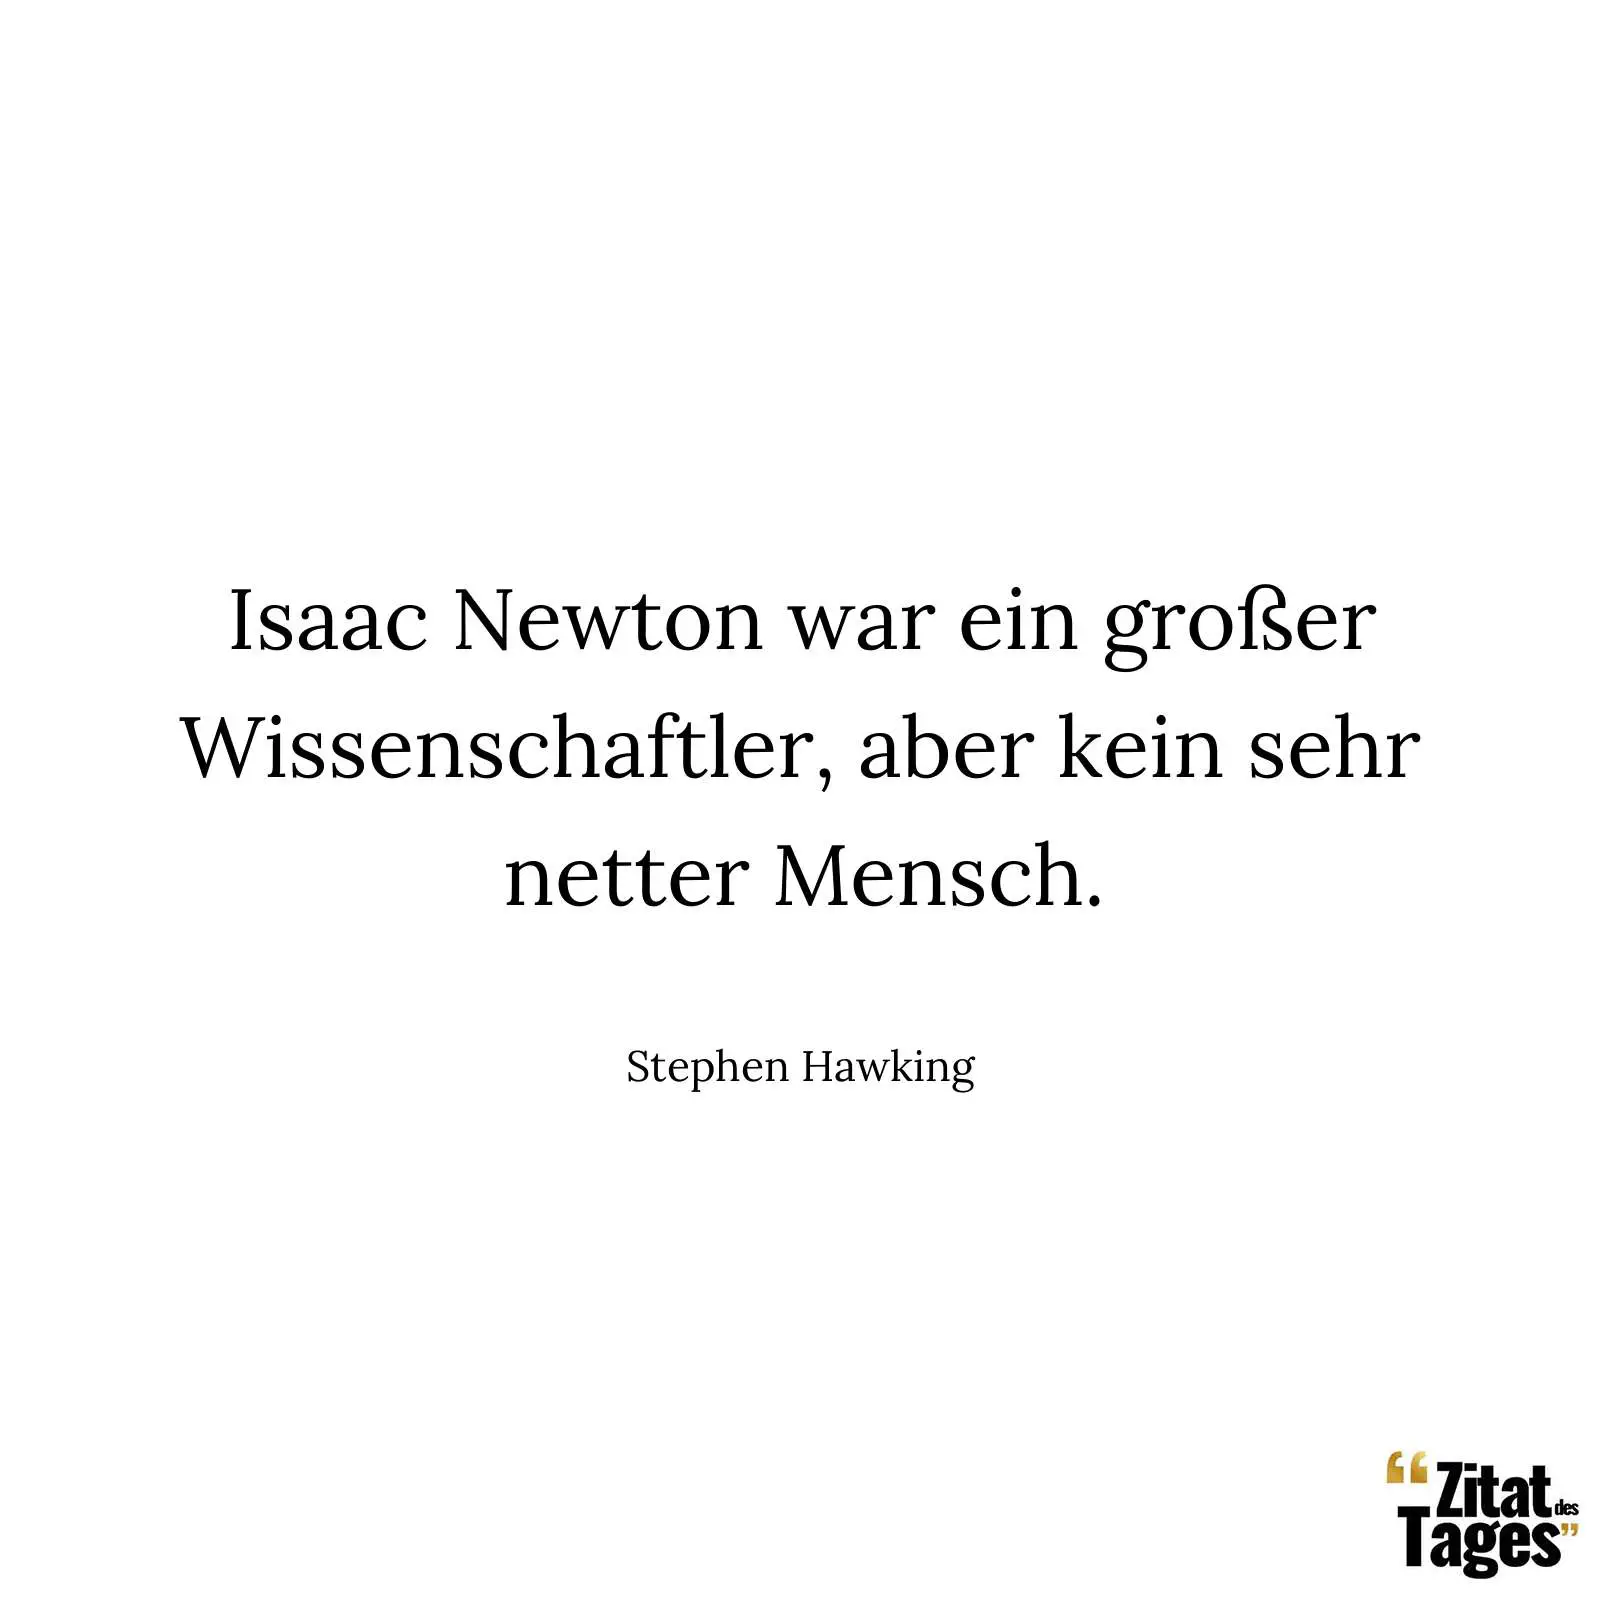 Isaac Newton war ein großer Wissenschaftler, aber kein sehr netter Mensch. - Stephen Hawking